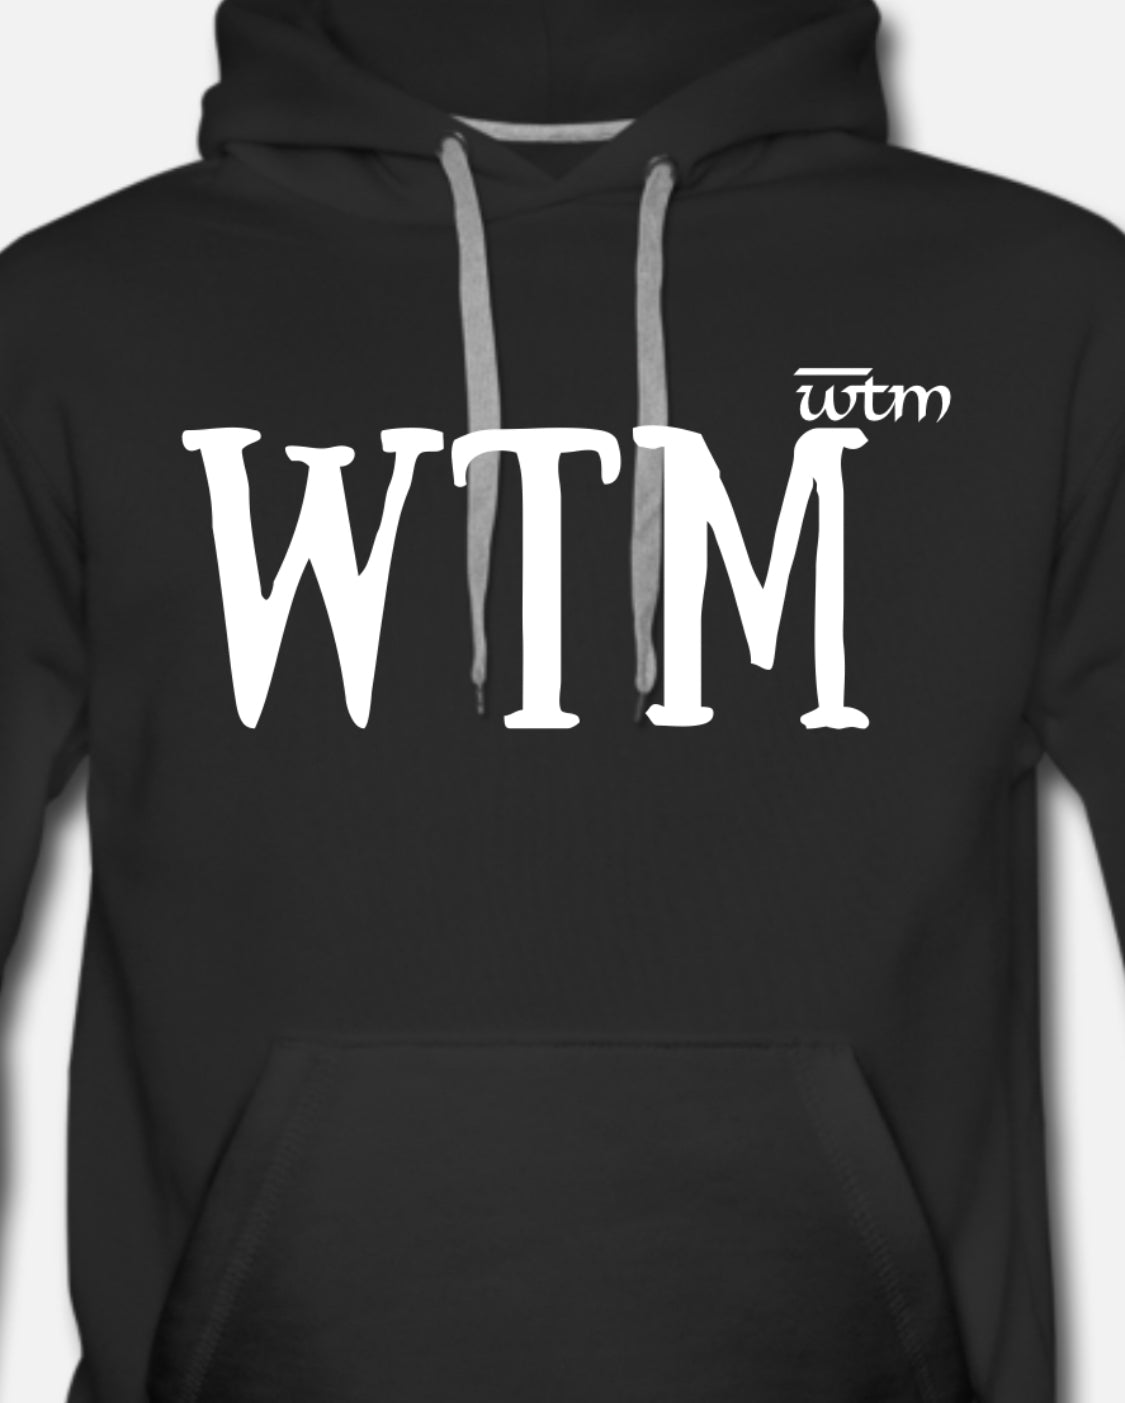 Premium Black “WTM” Hoodie